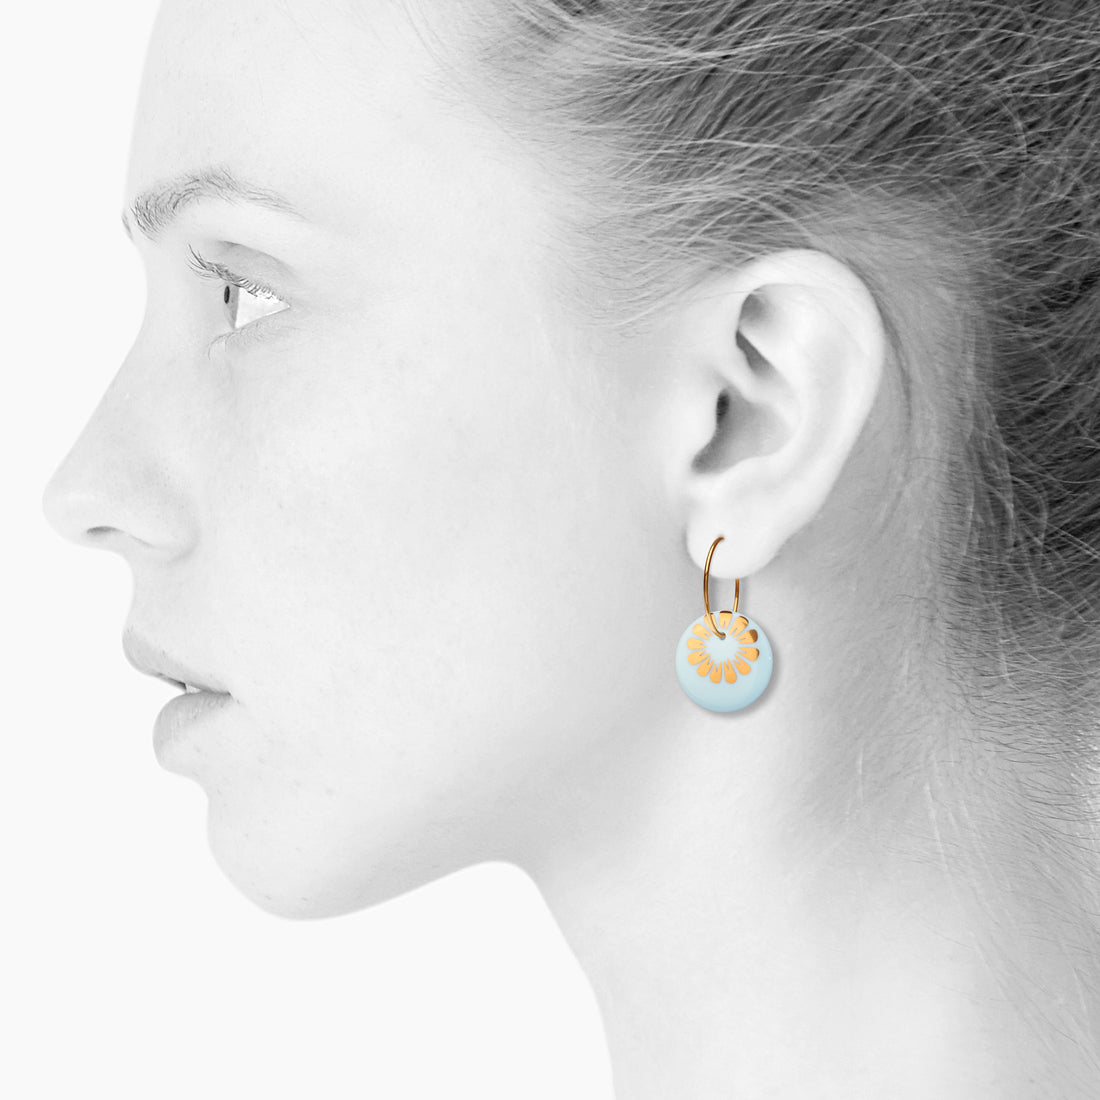 BLOOM øreringe, stor - CLOUD/GOLD - SCHERNING smykker